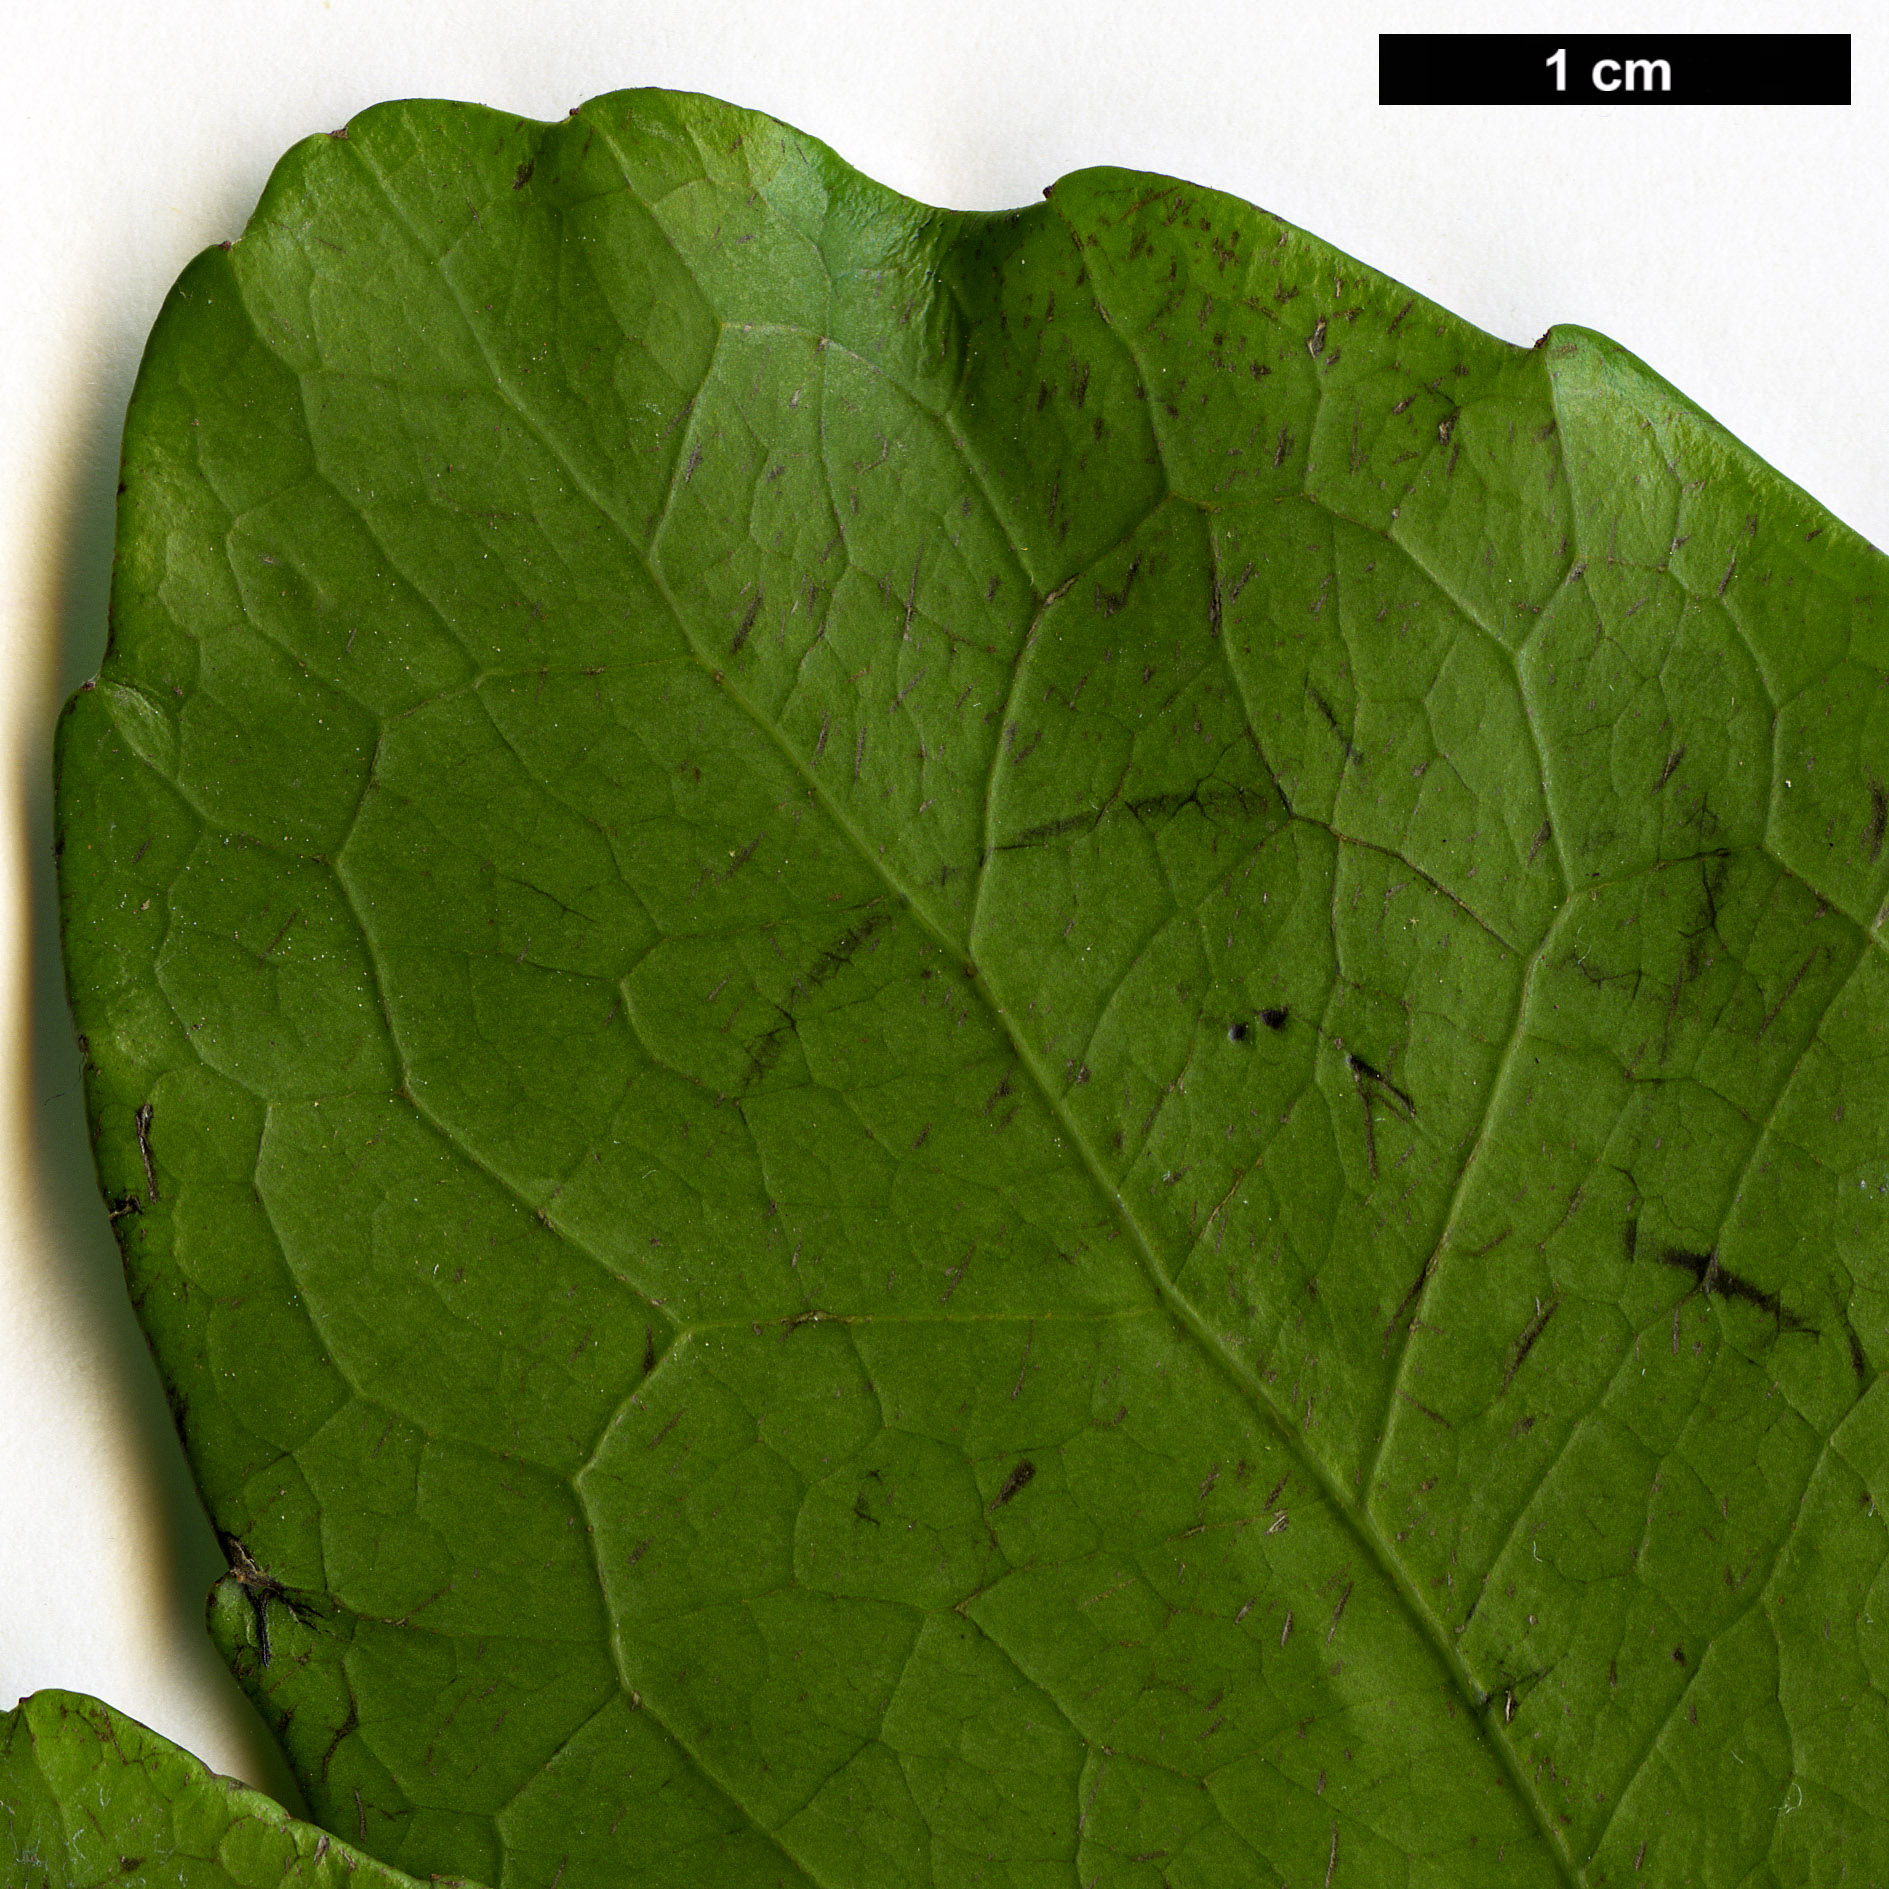 High resolution image: Family: Aquifoliaceae - Genus: Ilex - Taxon: paraguariensis